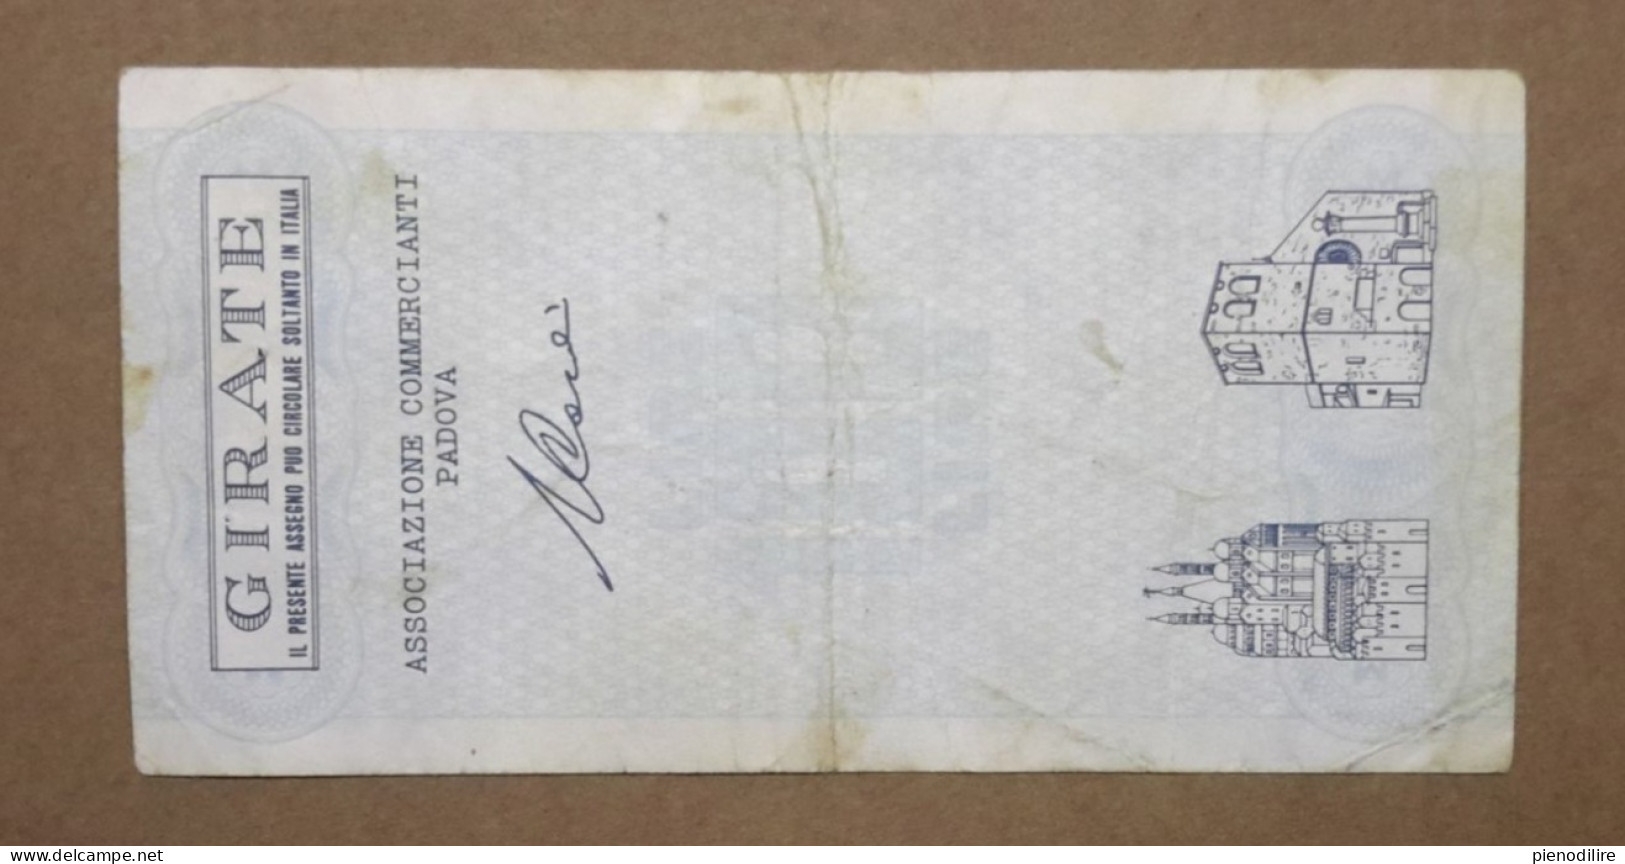 BANCA ANTONIANA DI PADOVA E TRIESTE, 100 Lire 13.06.1977 ASSOCIAZIONE COMMERCIANTI PADOVA (A1.72) - [10] Cheques Y Mini-cheques